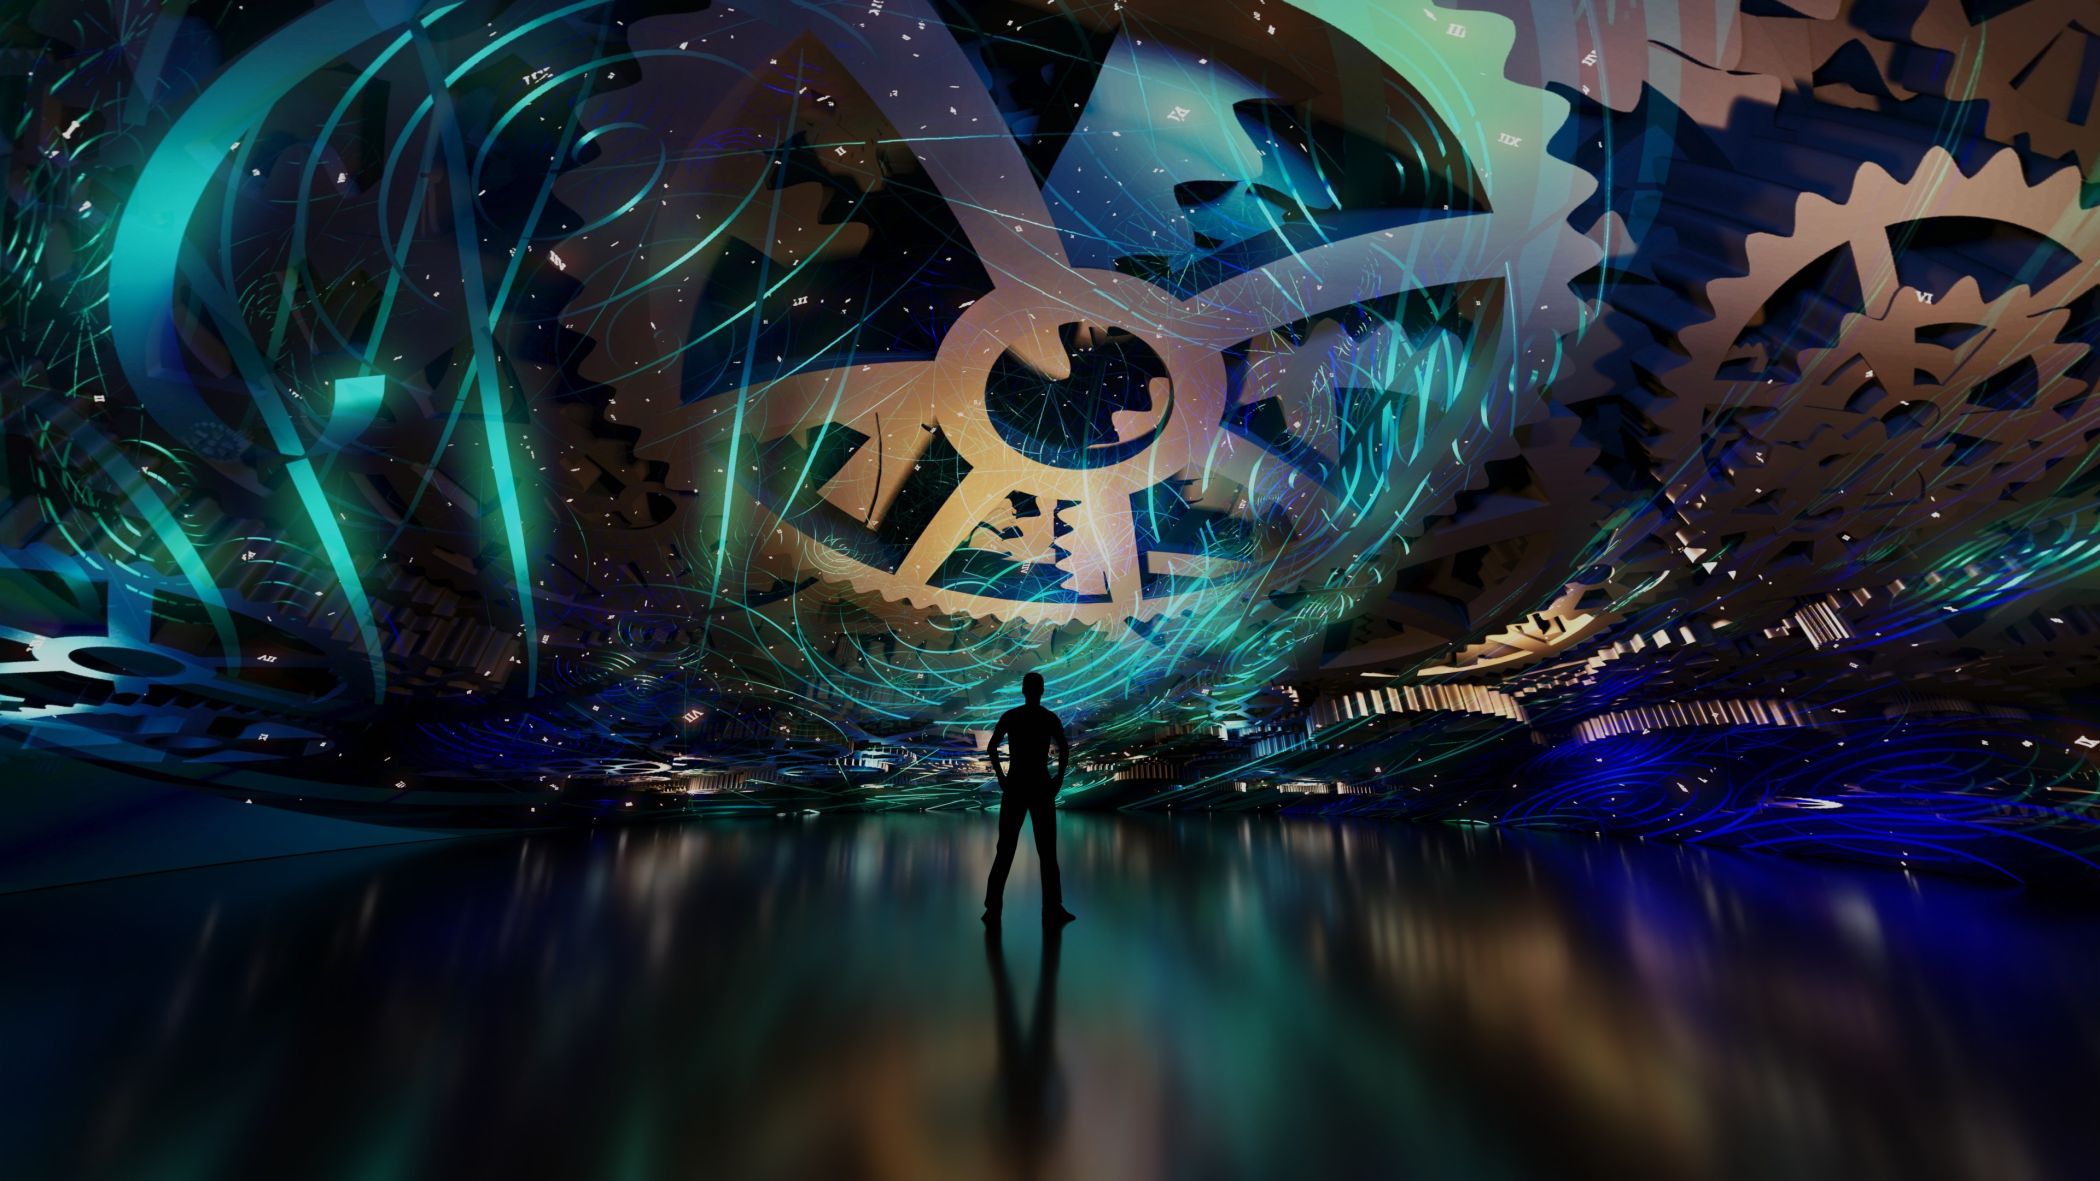 Musikproduzent Johannes Kraas und der Künstler Rocco Helmchen zeigen am Freitag eindrucksvolle Bildwelten in der Musikshow "FLOW - Visions of Time"./ Dome Promo1